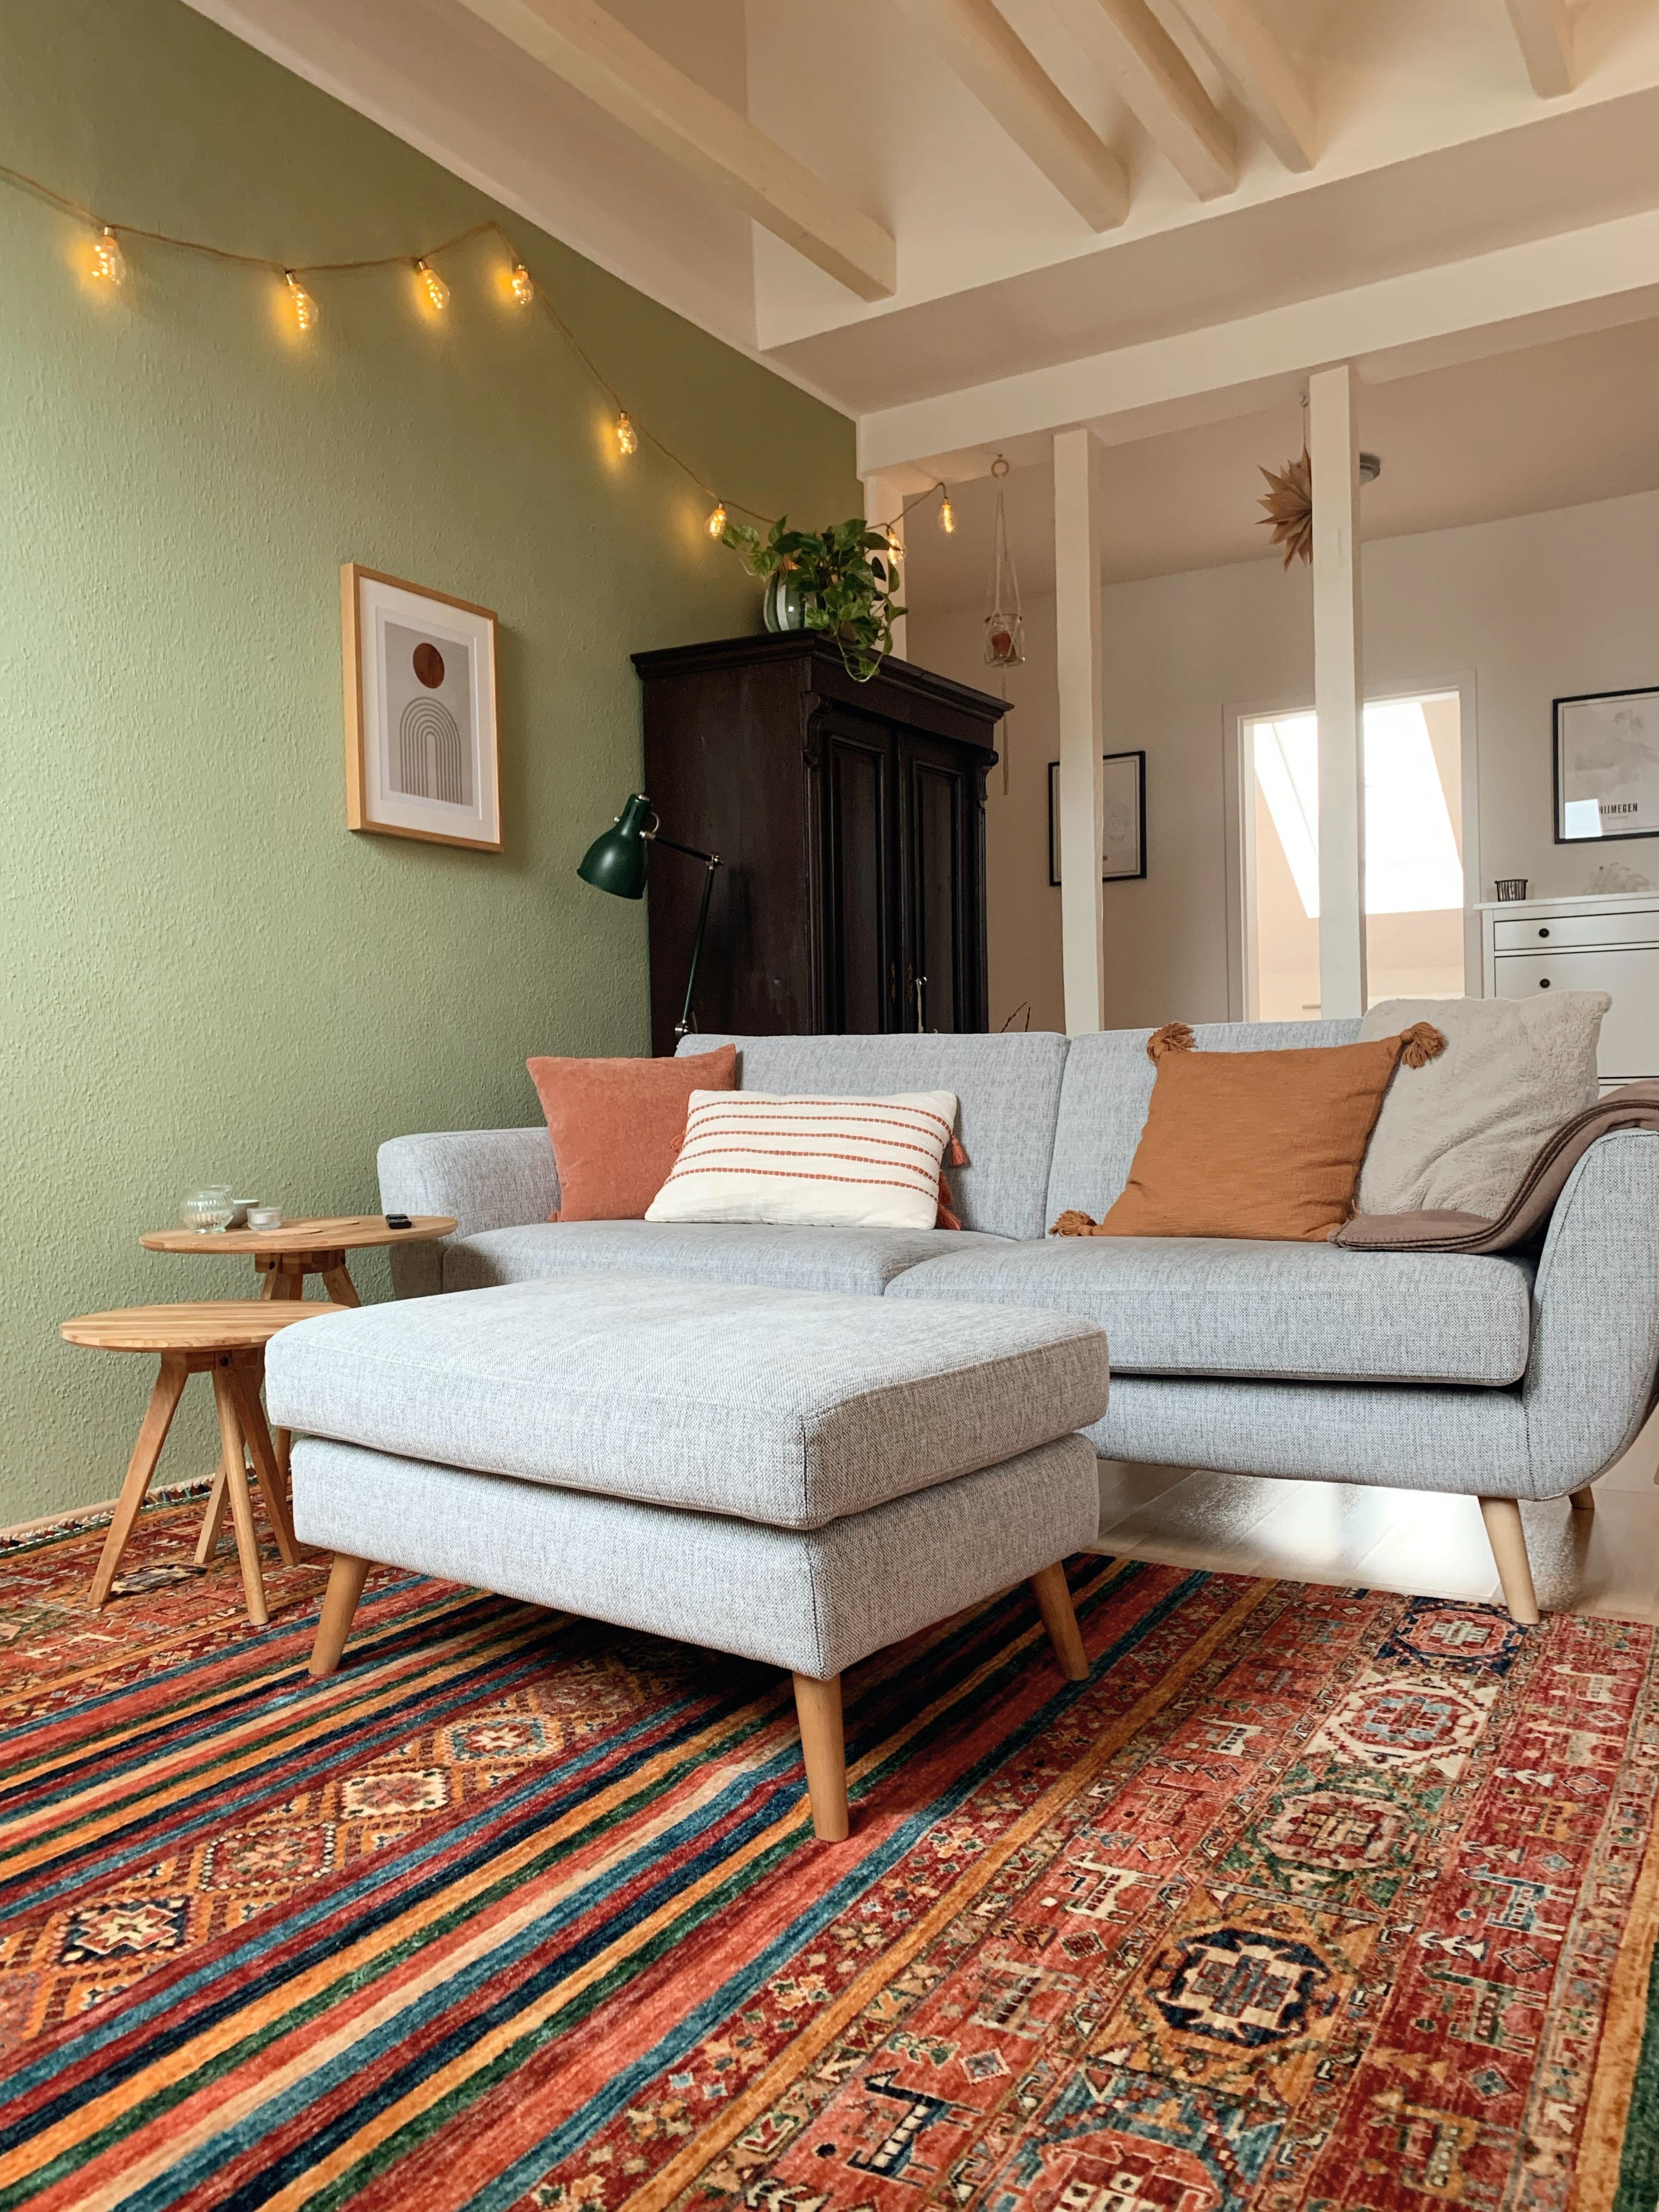 Liebe diesen Teppich! 

#teppich #bunt #couch #sofa #kissen #gemütlich #wohnzimmer 